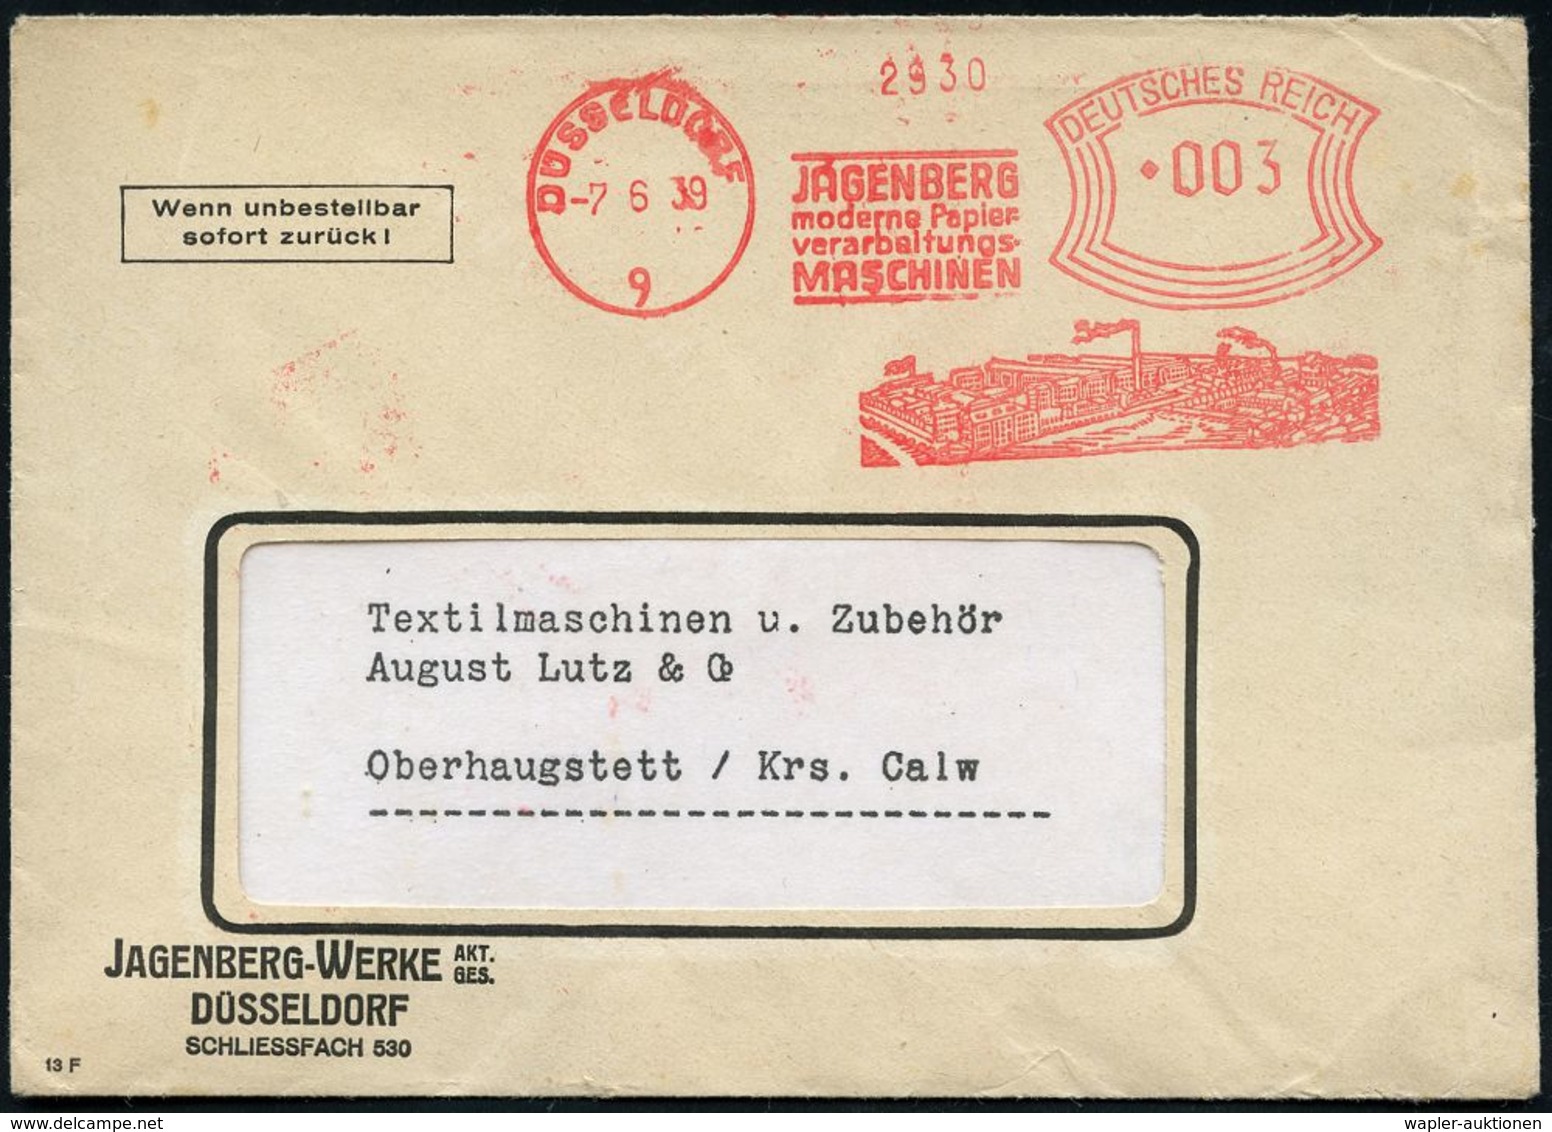 PAPIER / PAPIERVERARBEITUNG / ZELLSTOFF : DÜSSELDORF/ 9/ JAGENBERG/ Moderne Papier-/ Verarbeitungs-/ MASCHINEN 1939 (7.6 - Unclassified